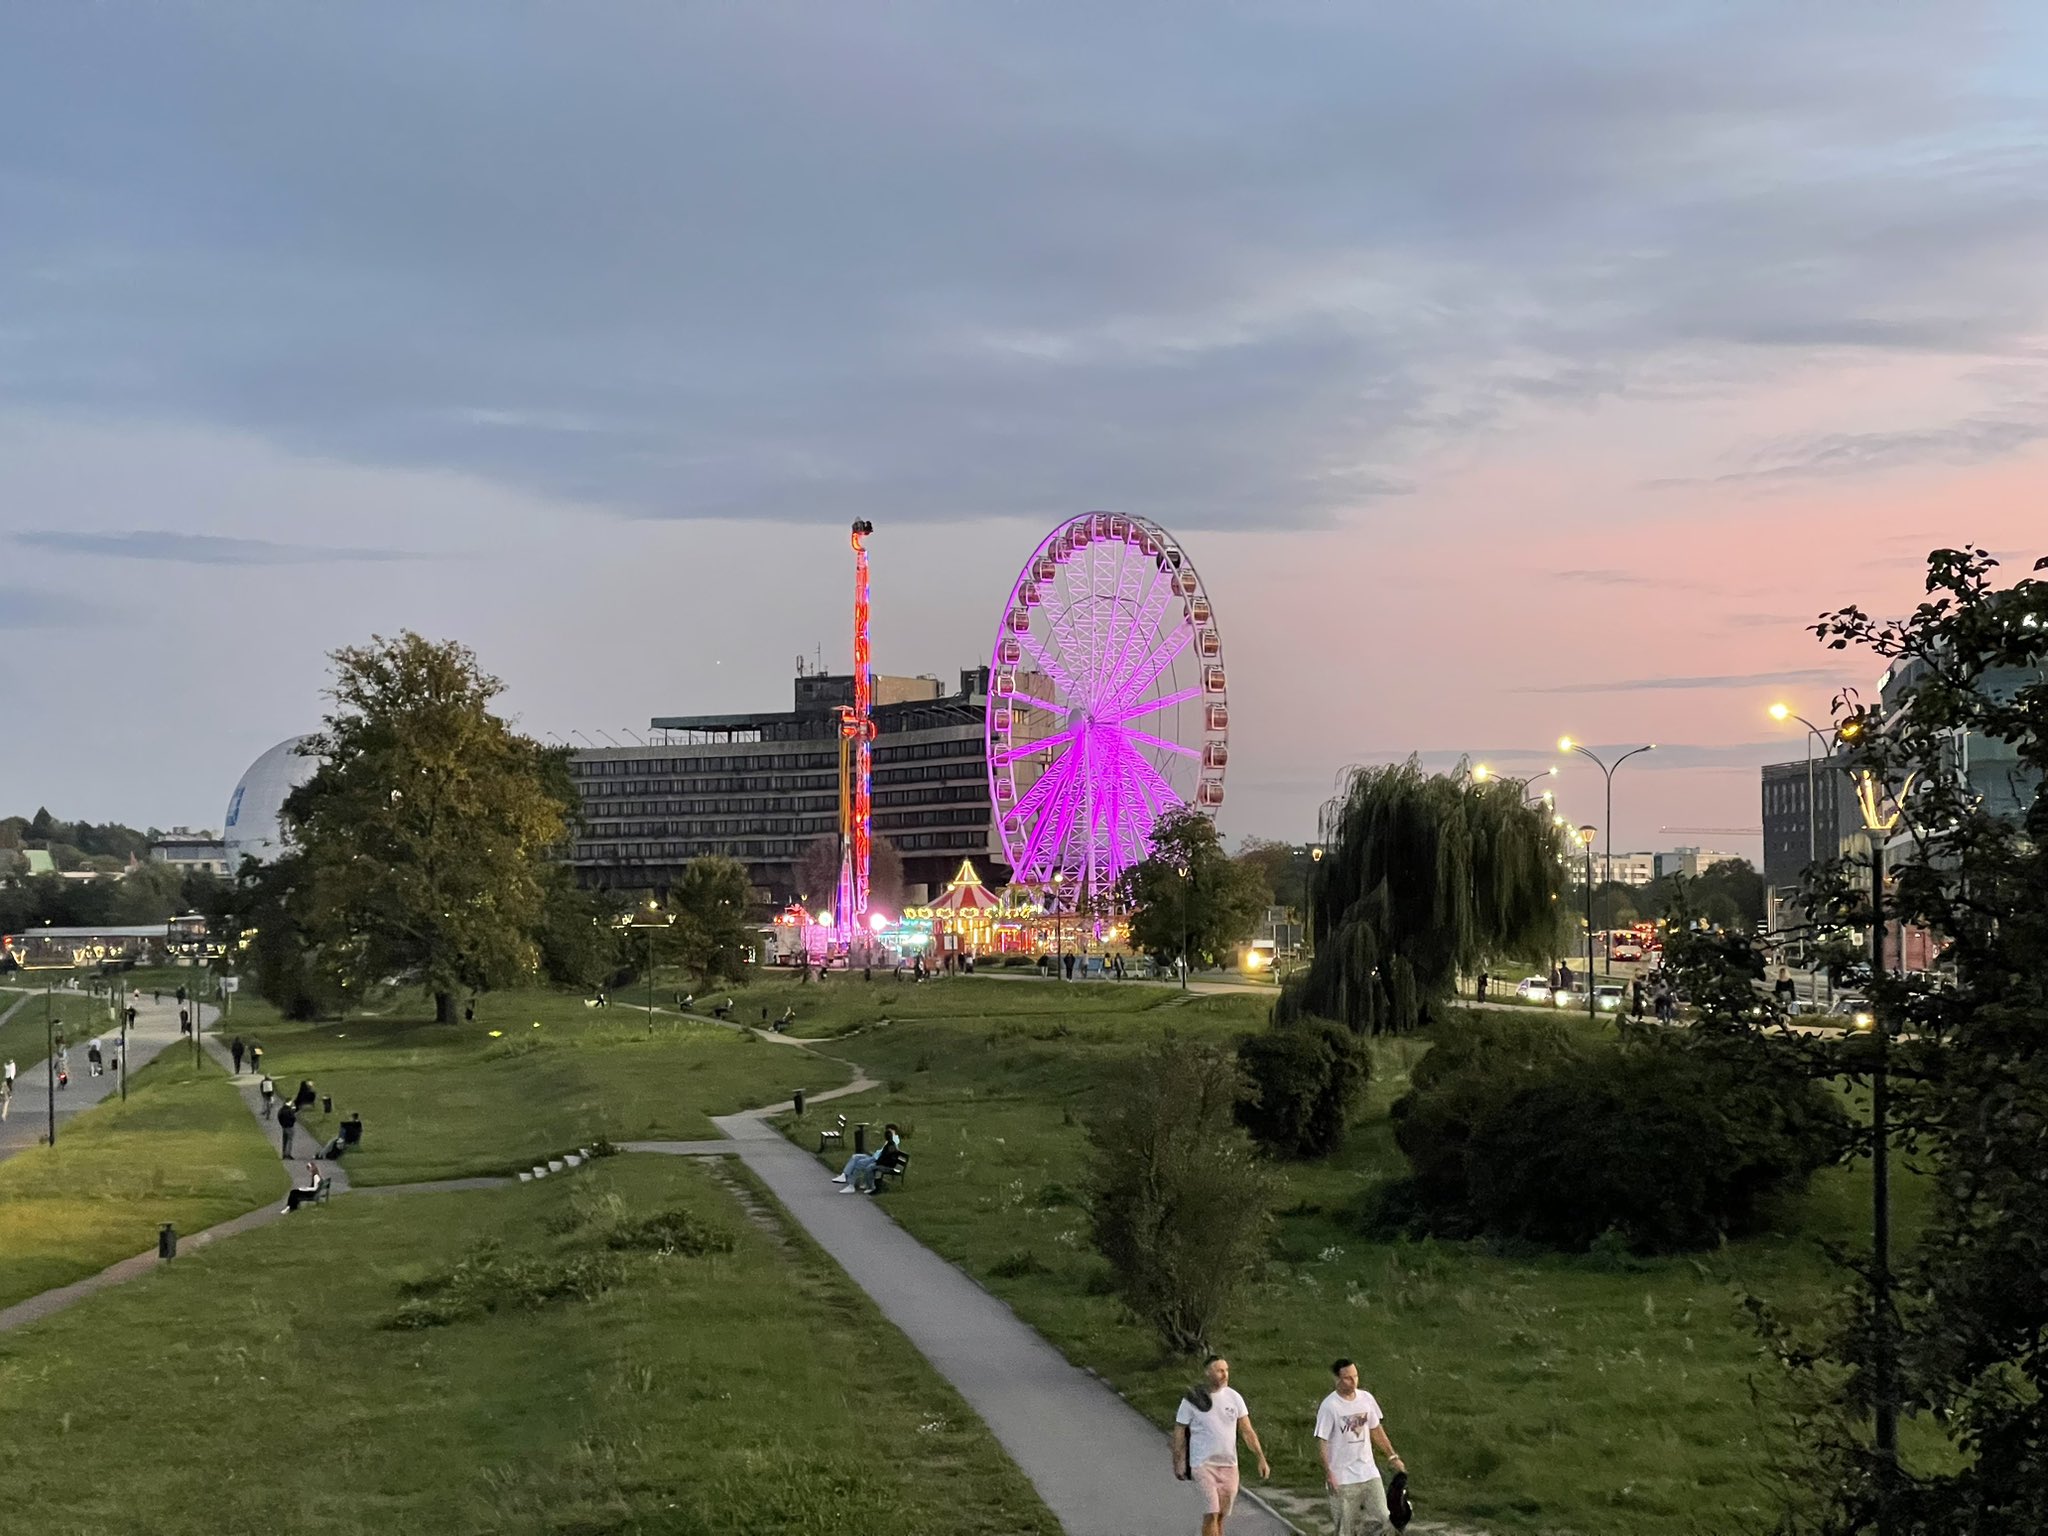 Fun fair in Krakow